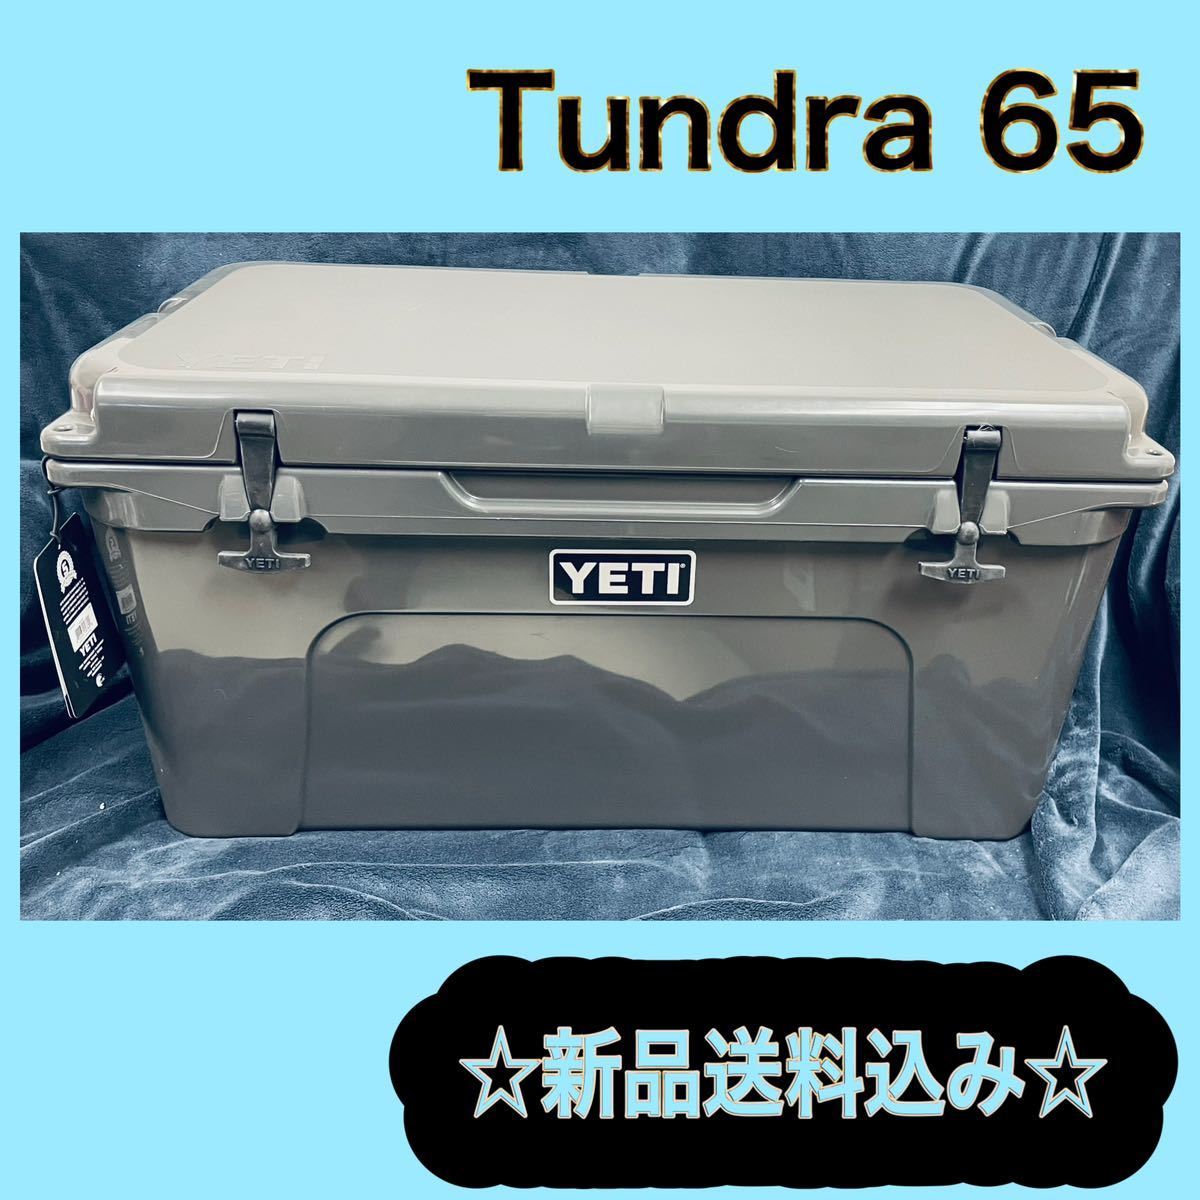 ☆新品☆ Yeti イエティ クーラー タンドラ tundra 65 チャコール